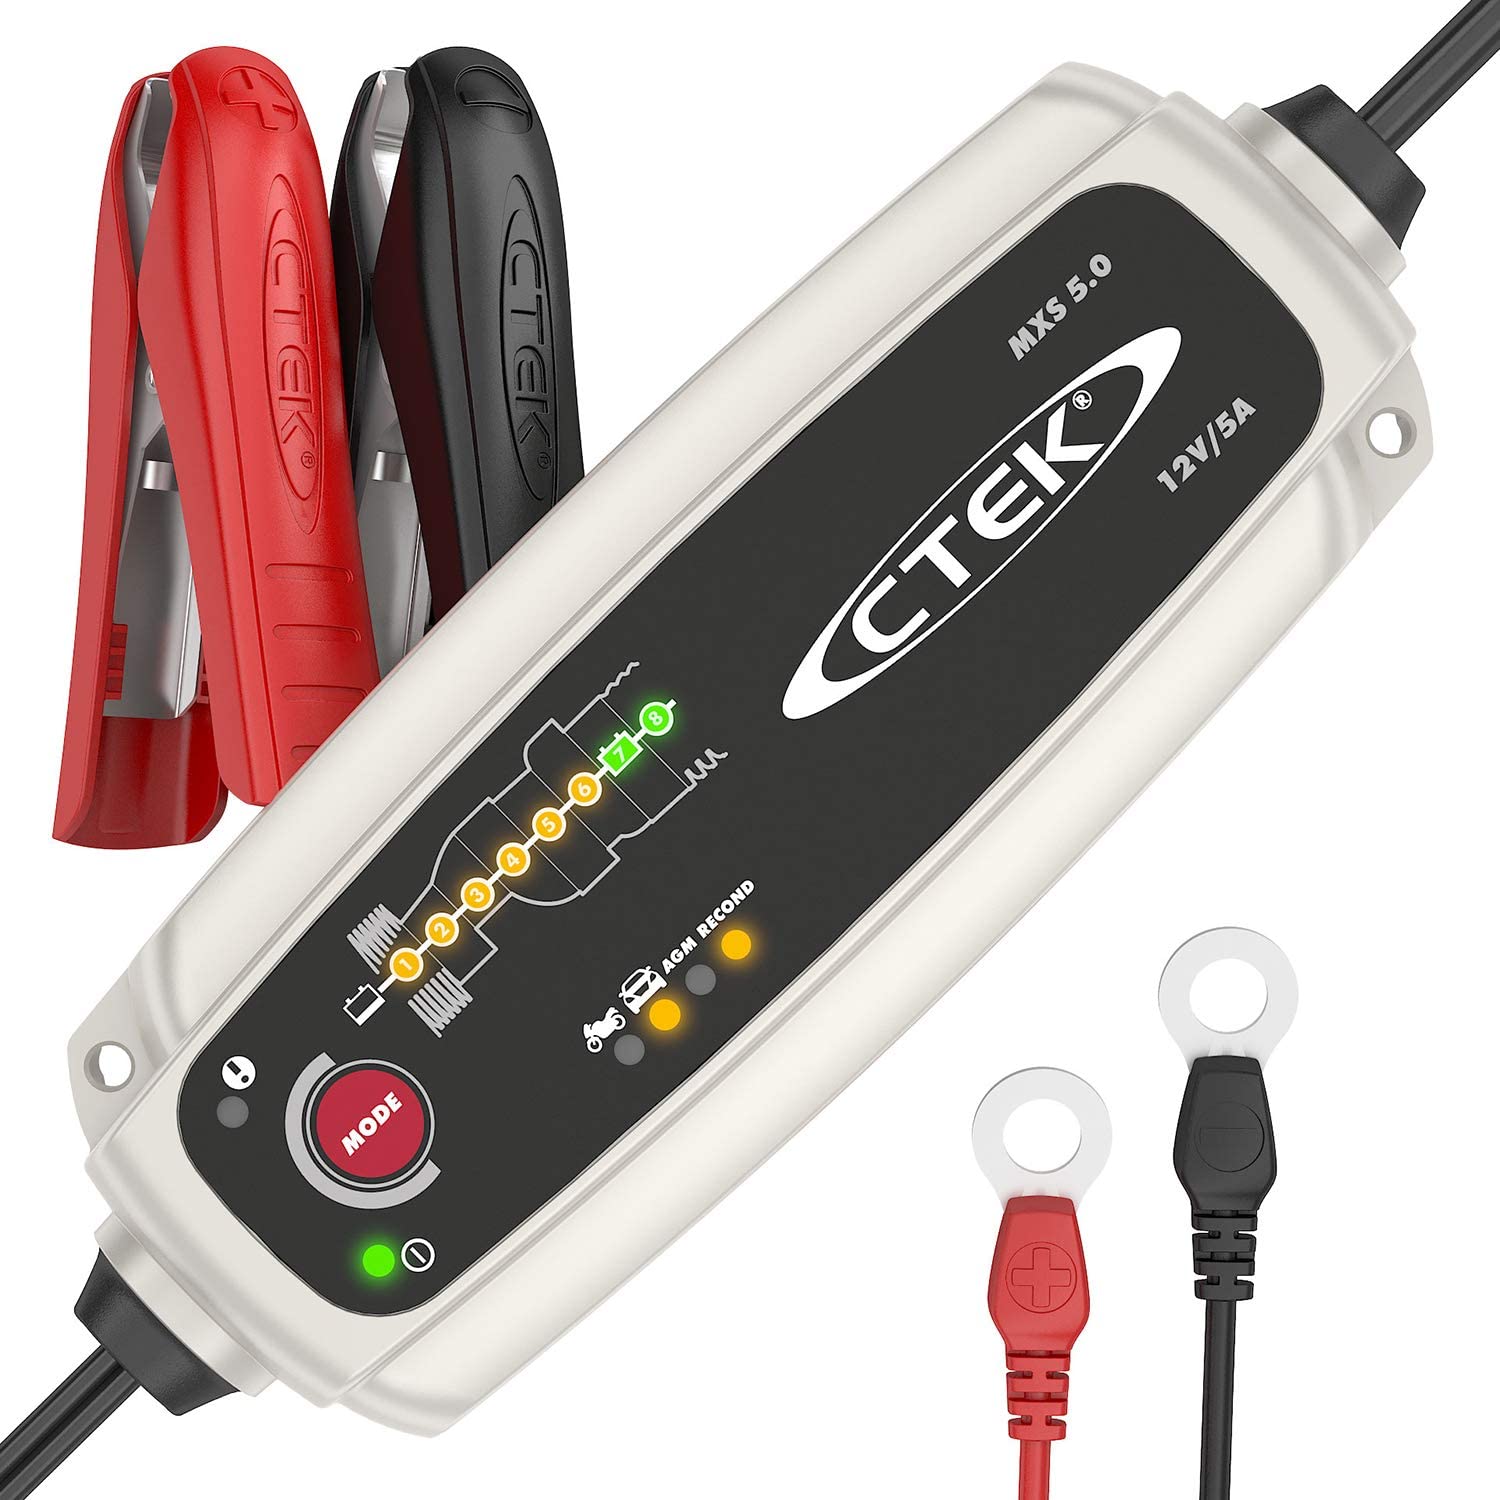 CTEK MXS 5.0 Caricabatterie Automatico (Carica, Mantiene e Ripristina Batterie da Auto e Moto) 12V, 5 Amp. – Presa Europea